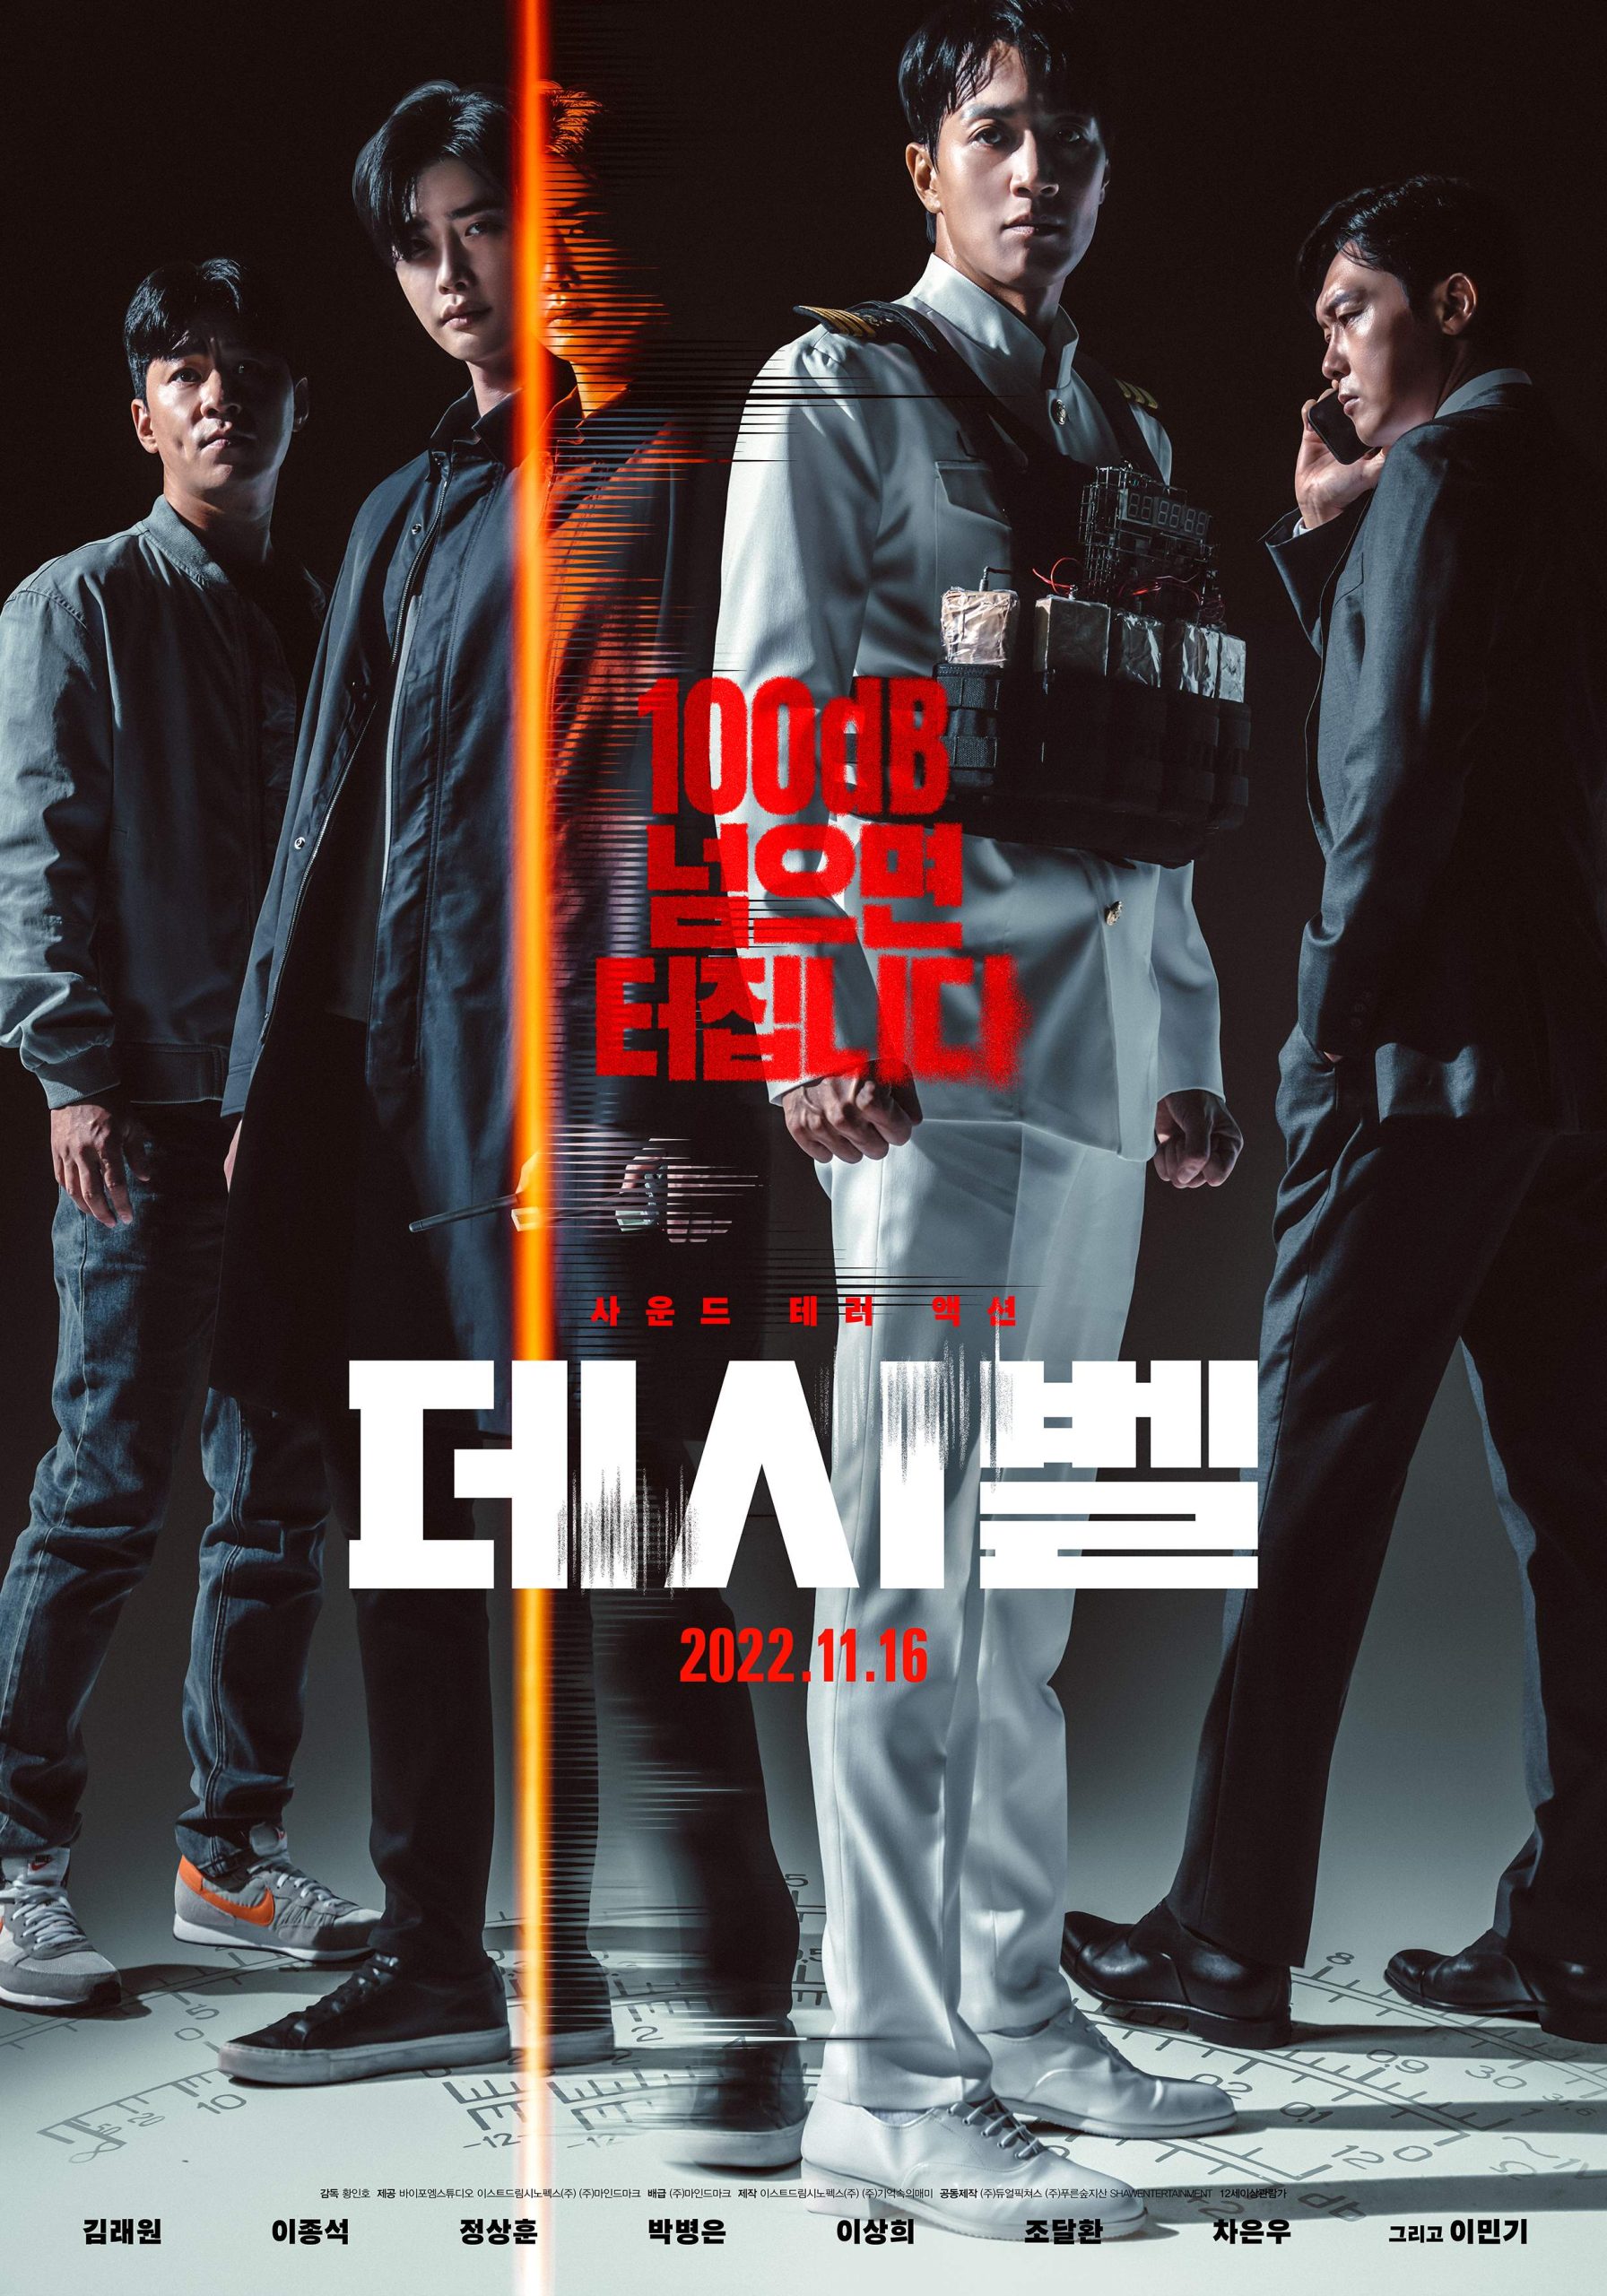 فیلم کره ای Decibel 2022